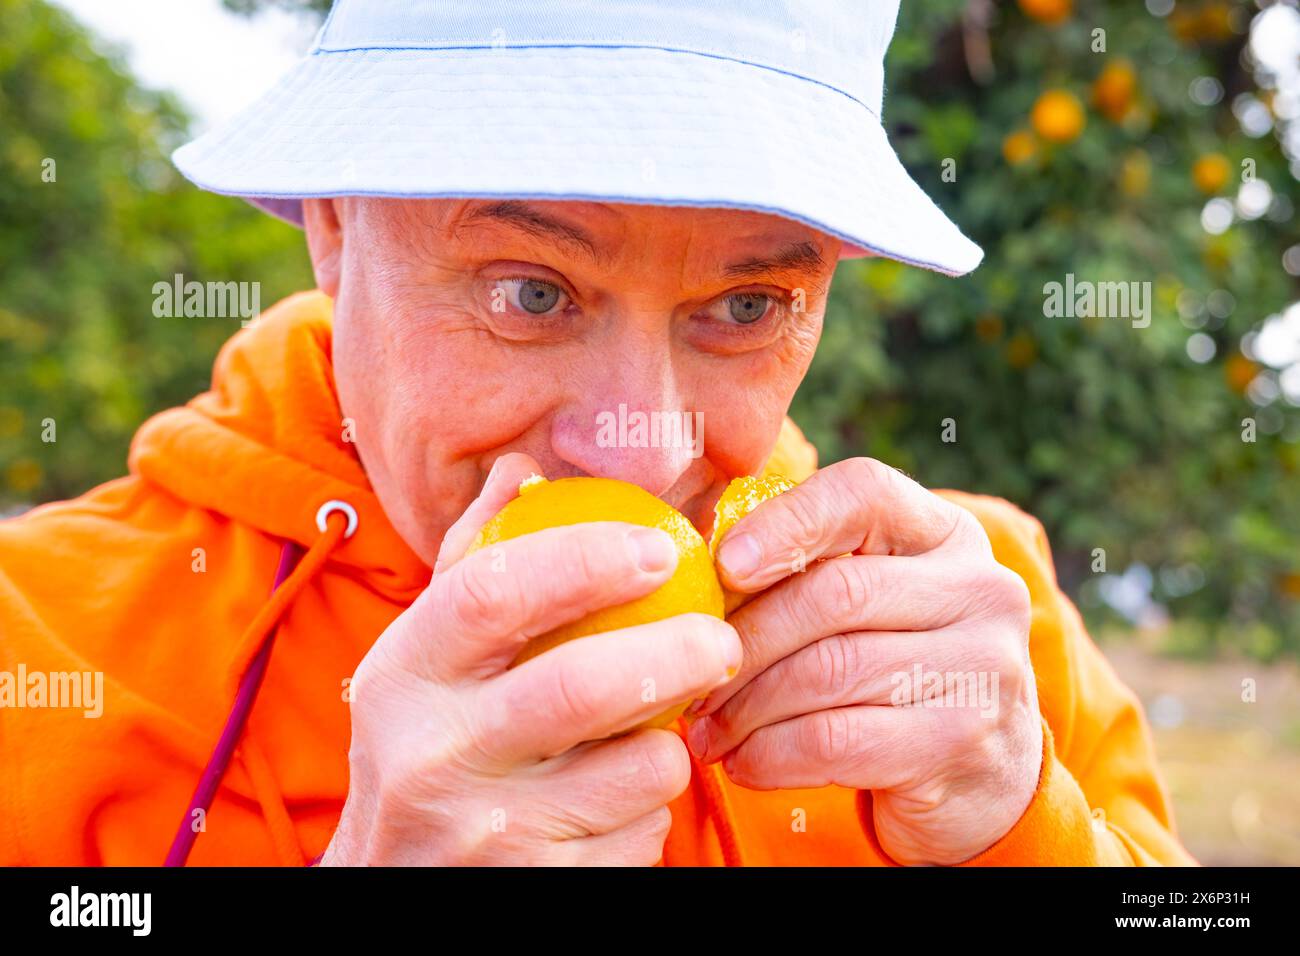 Die männliche Hand des Bauern legt sanft eine Handvoll frisch gepflückter Orangen auf einen lebendigen Orangenbaum, die Verbindung zwischen Mensch und Natur, das Leben im Kreislauf, das Kopfgeld h Stockfoto